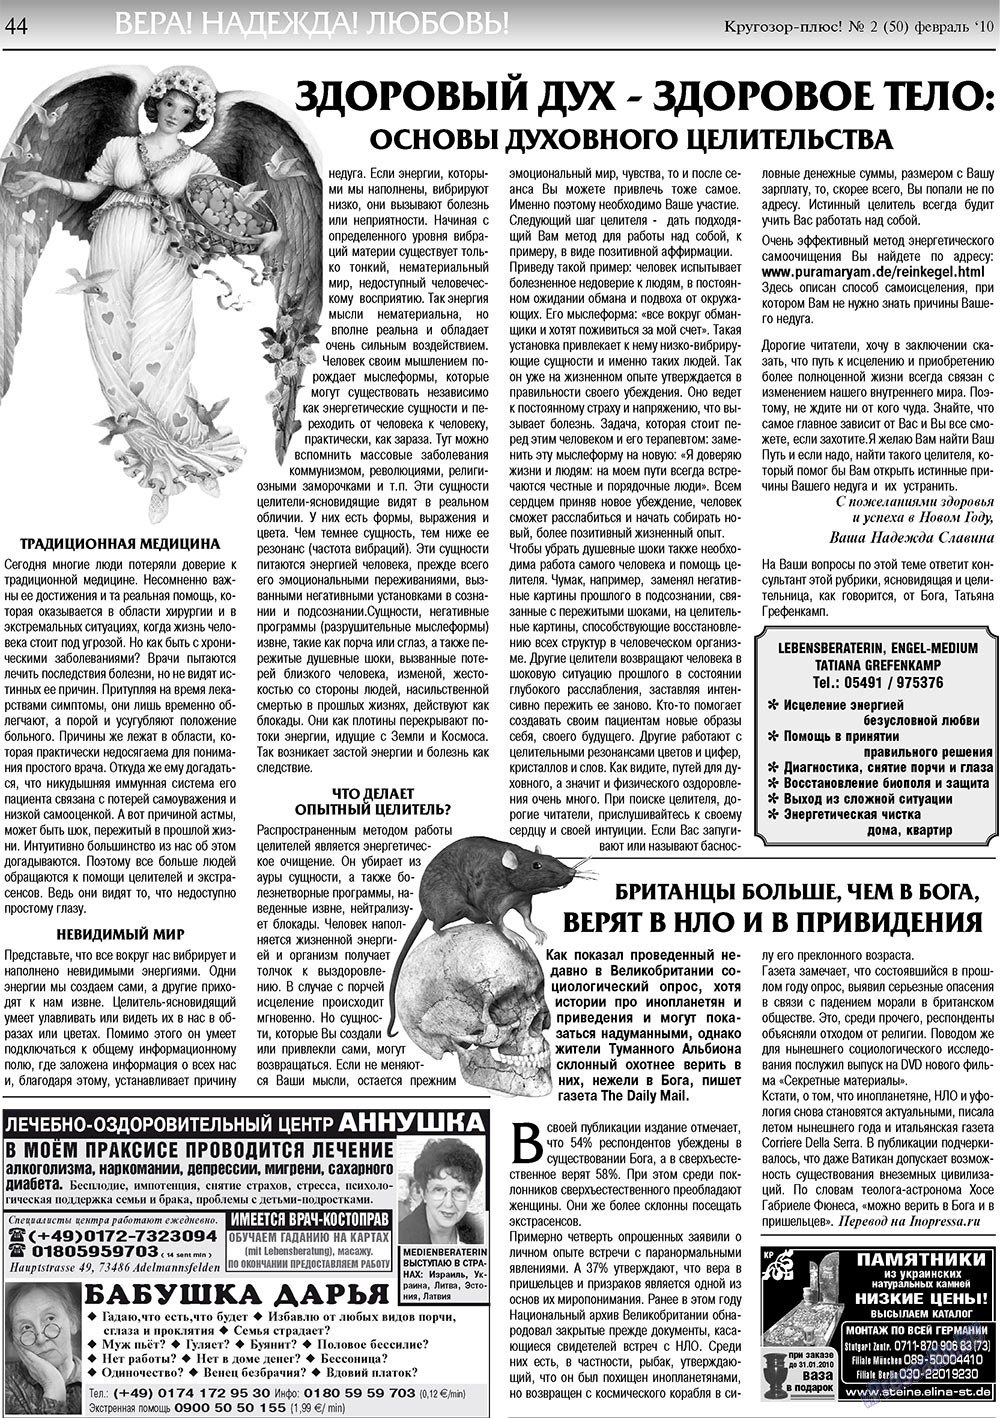 Кругозор плюс!, газета. 2010 №2 стр.46